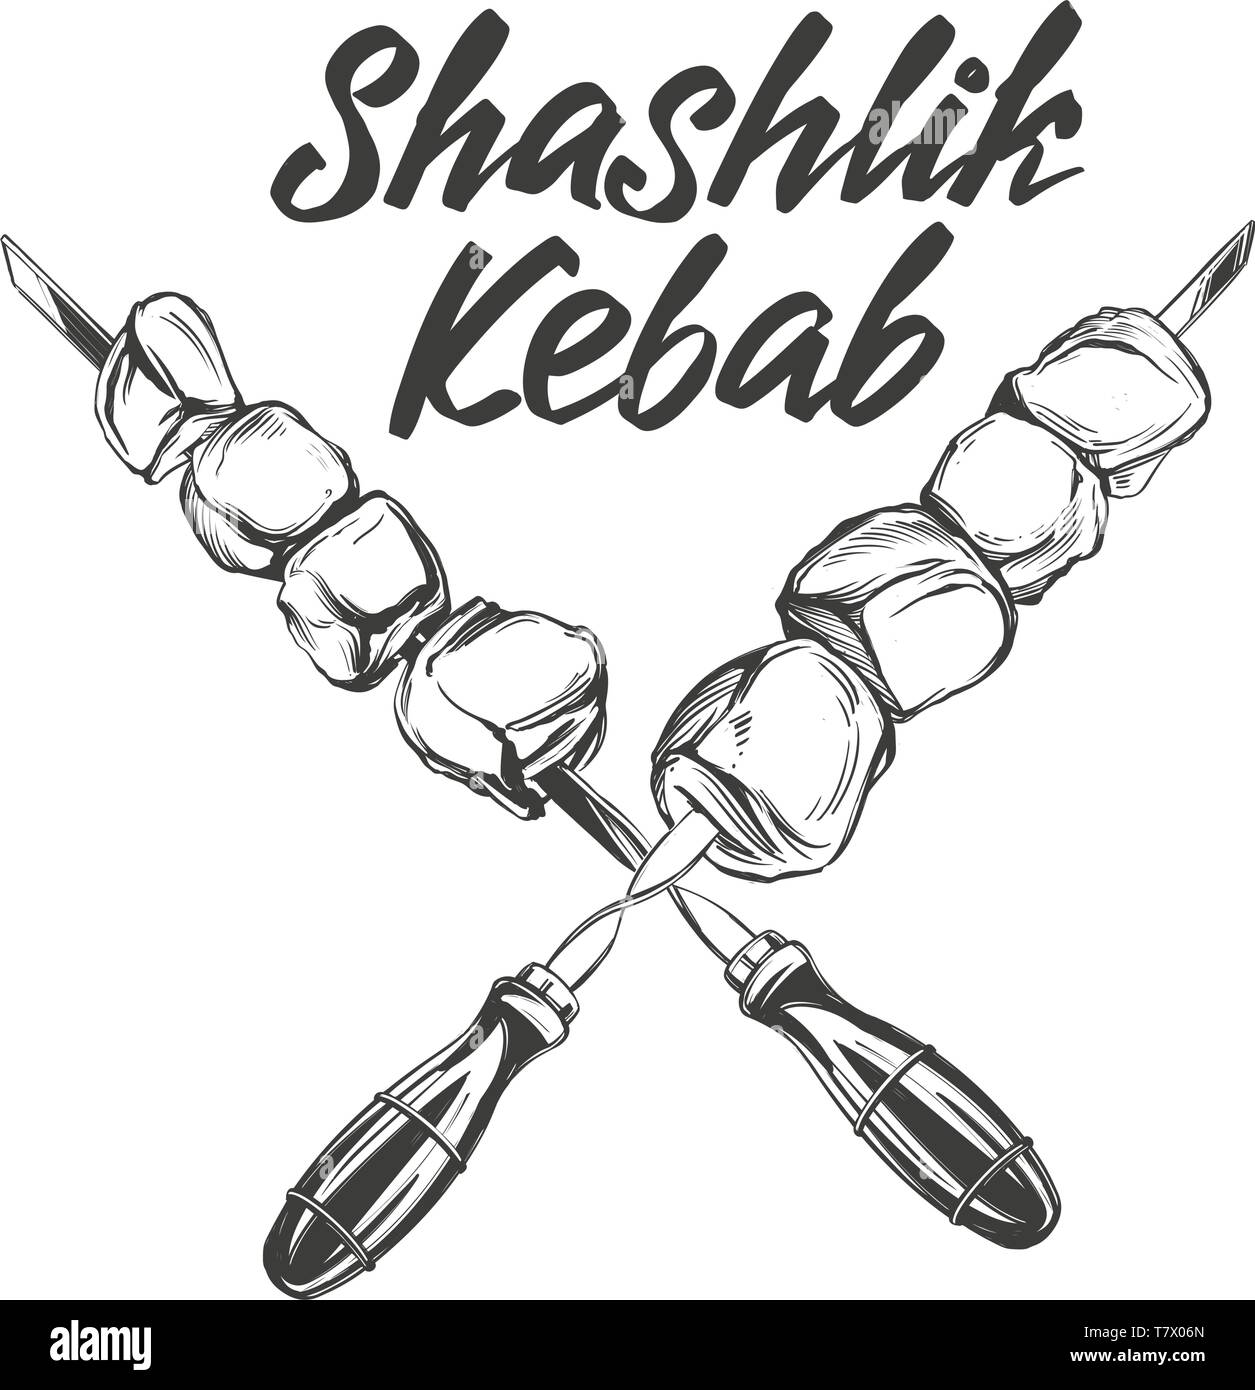 Kebab, Schaschlik, gegrillte Spieße, essen Fleisch, kalligraphische Text von Hand gezeichnet Vektor-illustration realistische Skizze Stock Vektor